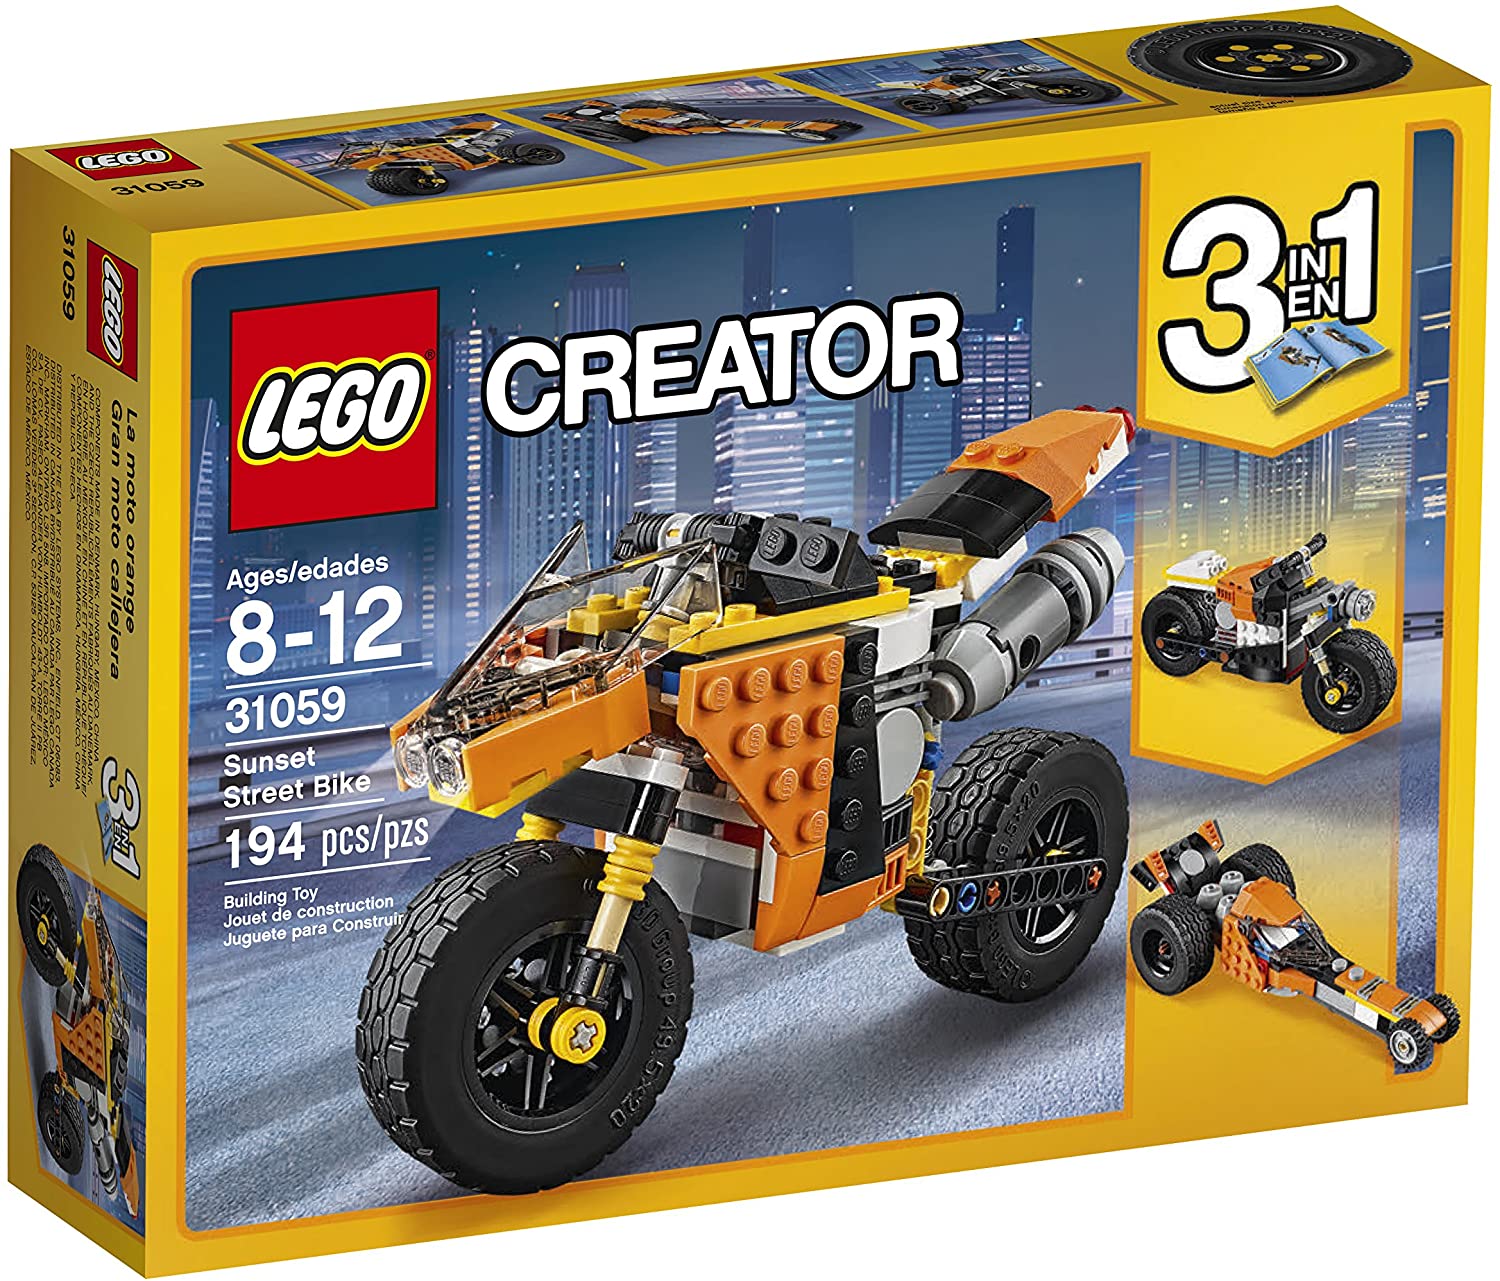 【折300+10%回饋】LEGO Creator Sunset Street Bike 31059 Building Kit